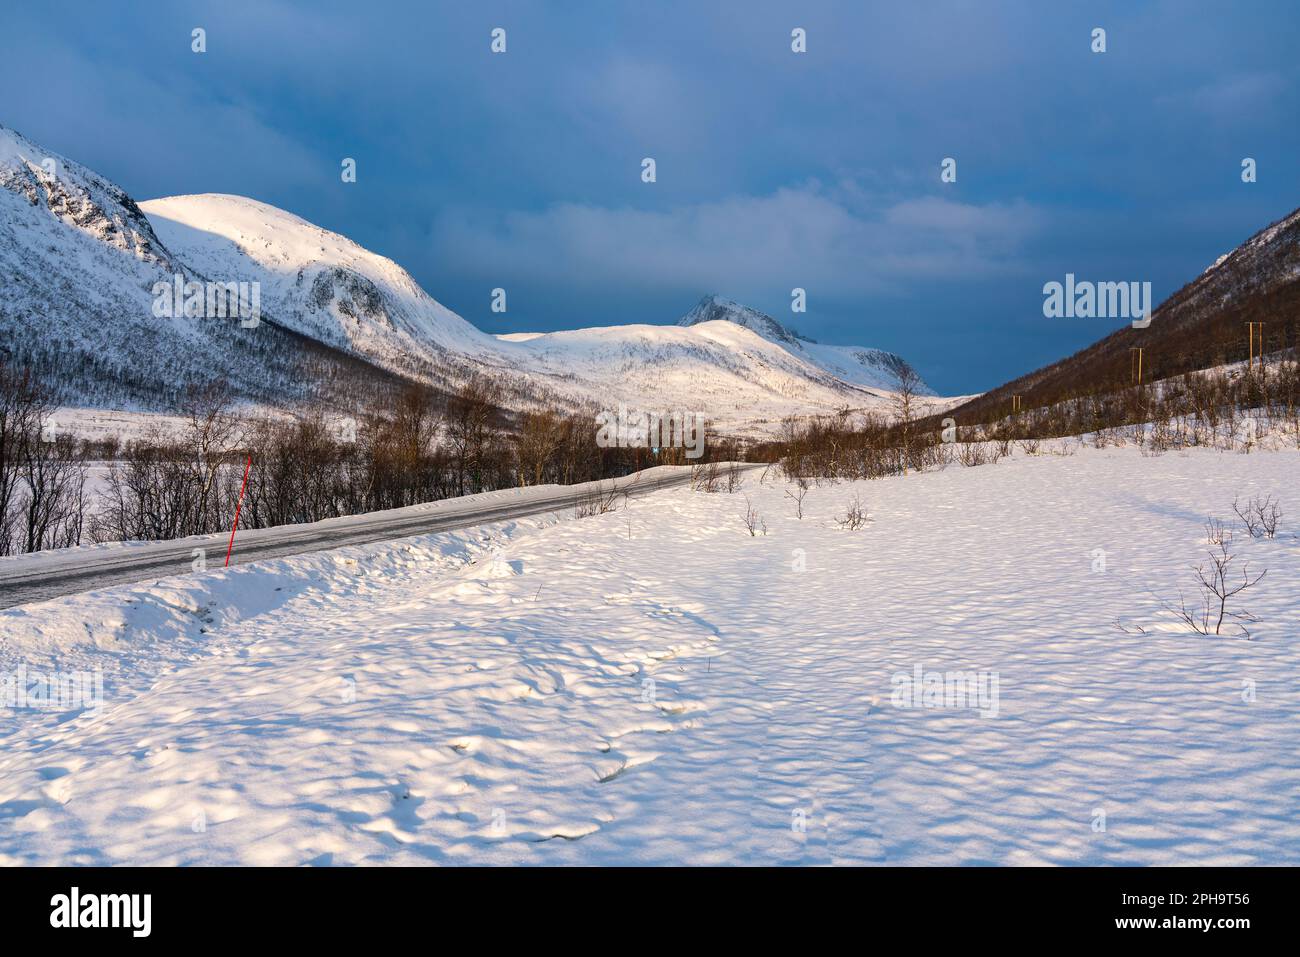 Morgenstimmung auf der Insel Senja und Kvaløya im Winter in Norwegen. Das Morgenrot färbt schneebedeckte Berge und Wolken rötlich, buntes Haus am Ufer Stock Photo